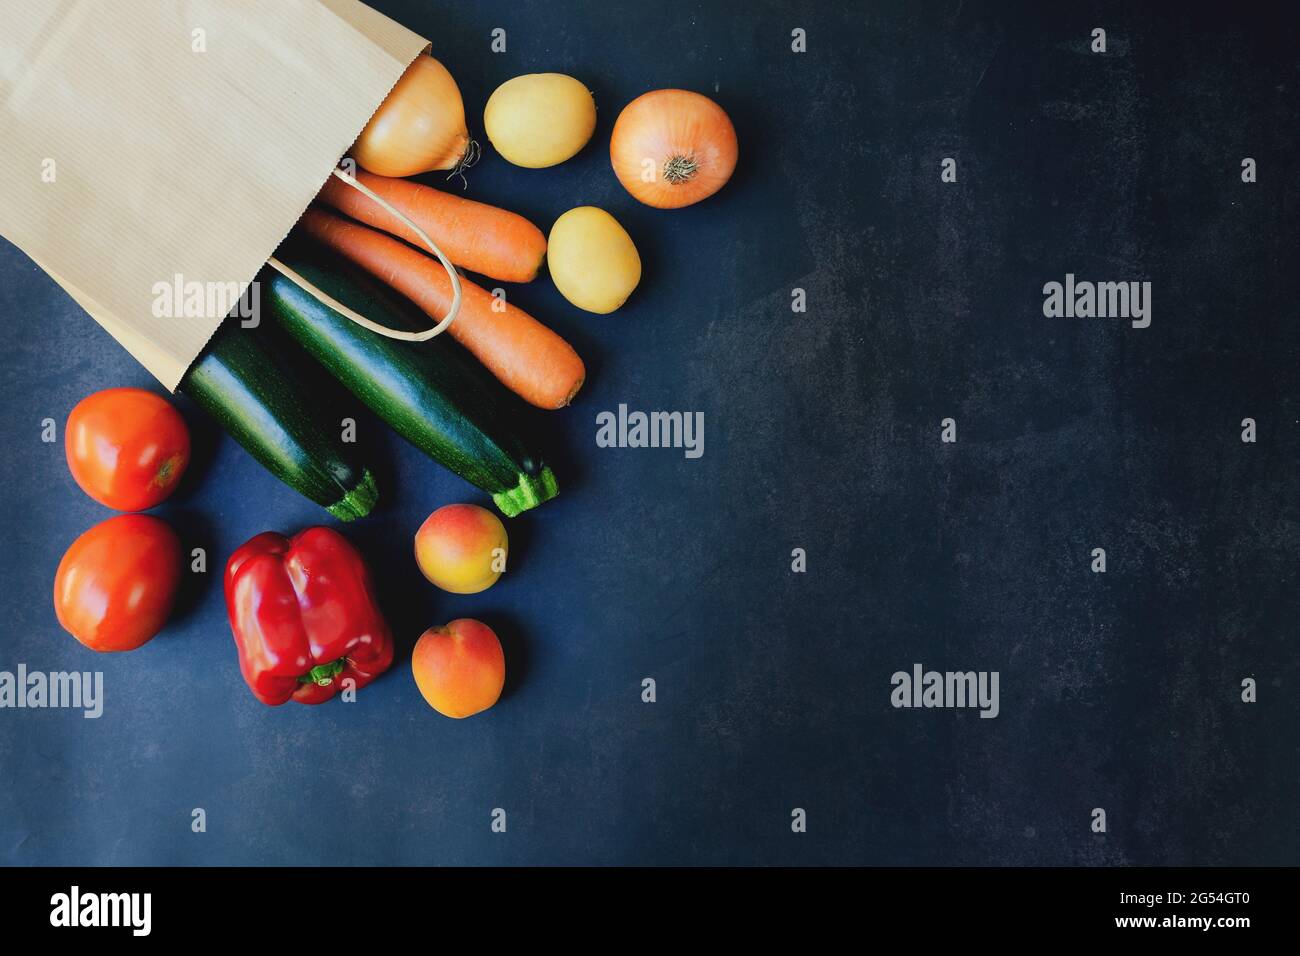 Einkaufen oder liefern gesunde Lebensmittel Konzept. Lebensmittelmarkt und sauberes veganes Esskonzept. Frisches Gemüse, Obst: In Papiertüte auf schwarzem Hintergrund Stockfoto